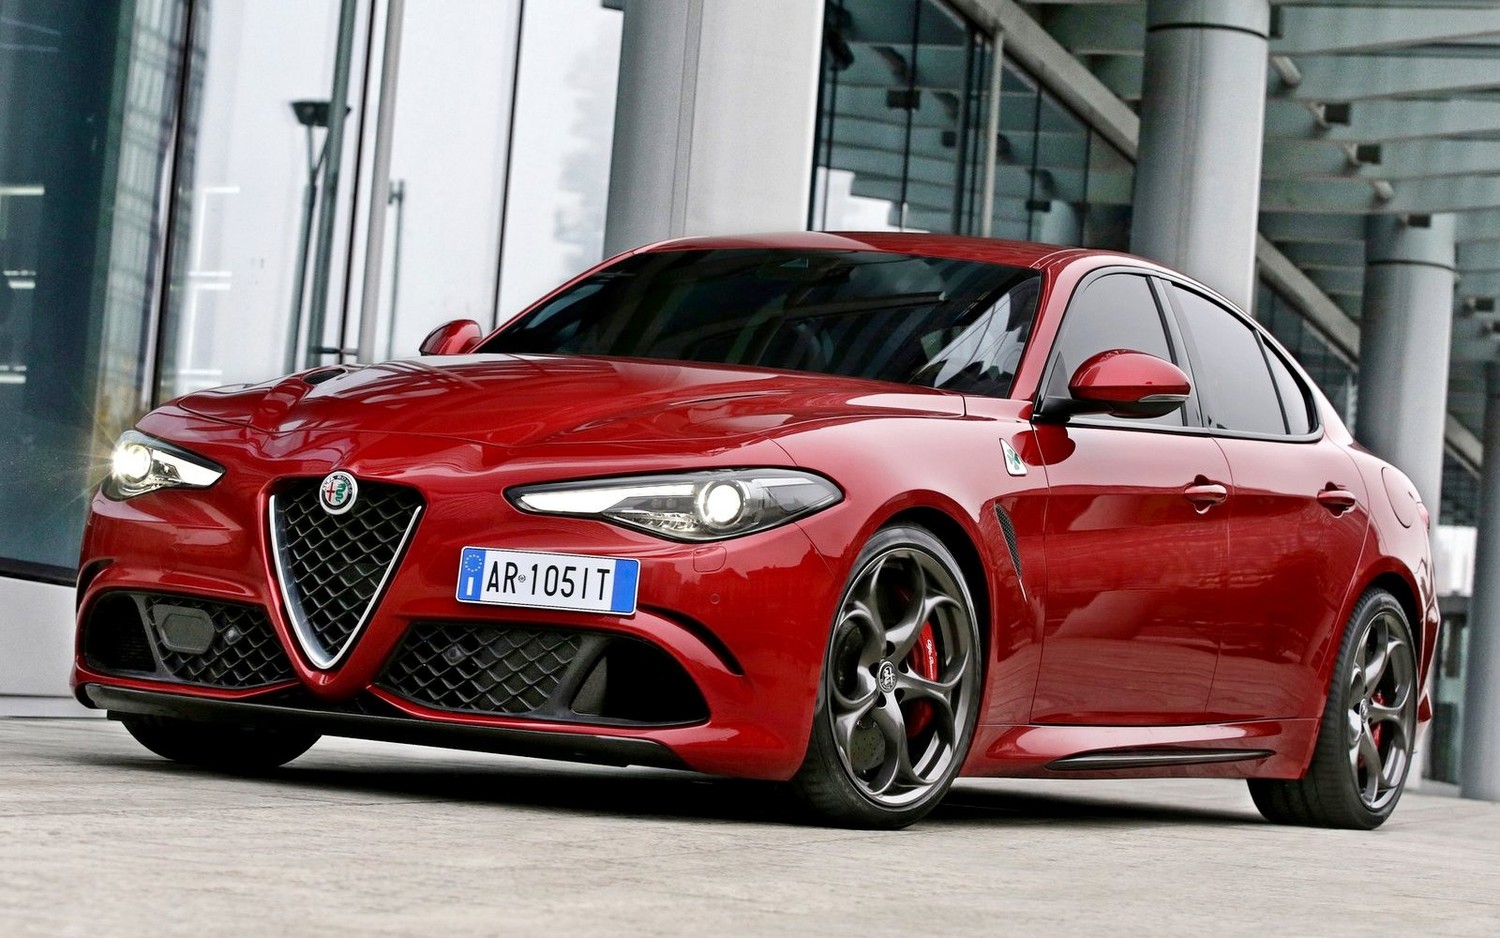 Alfa Romeo Giulia вернула себе титул королевы Нюрбургринга